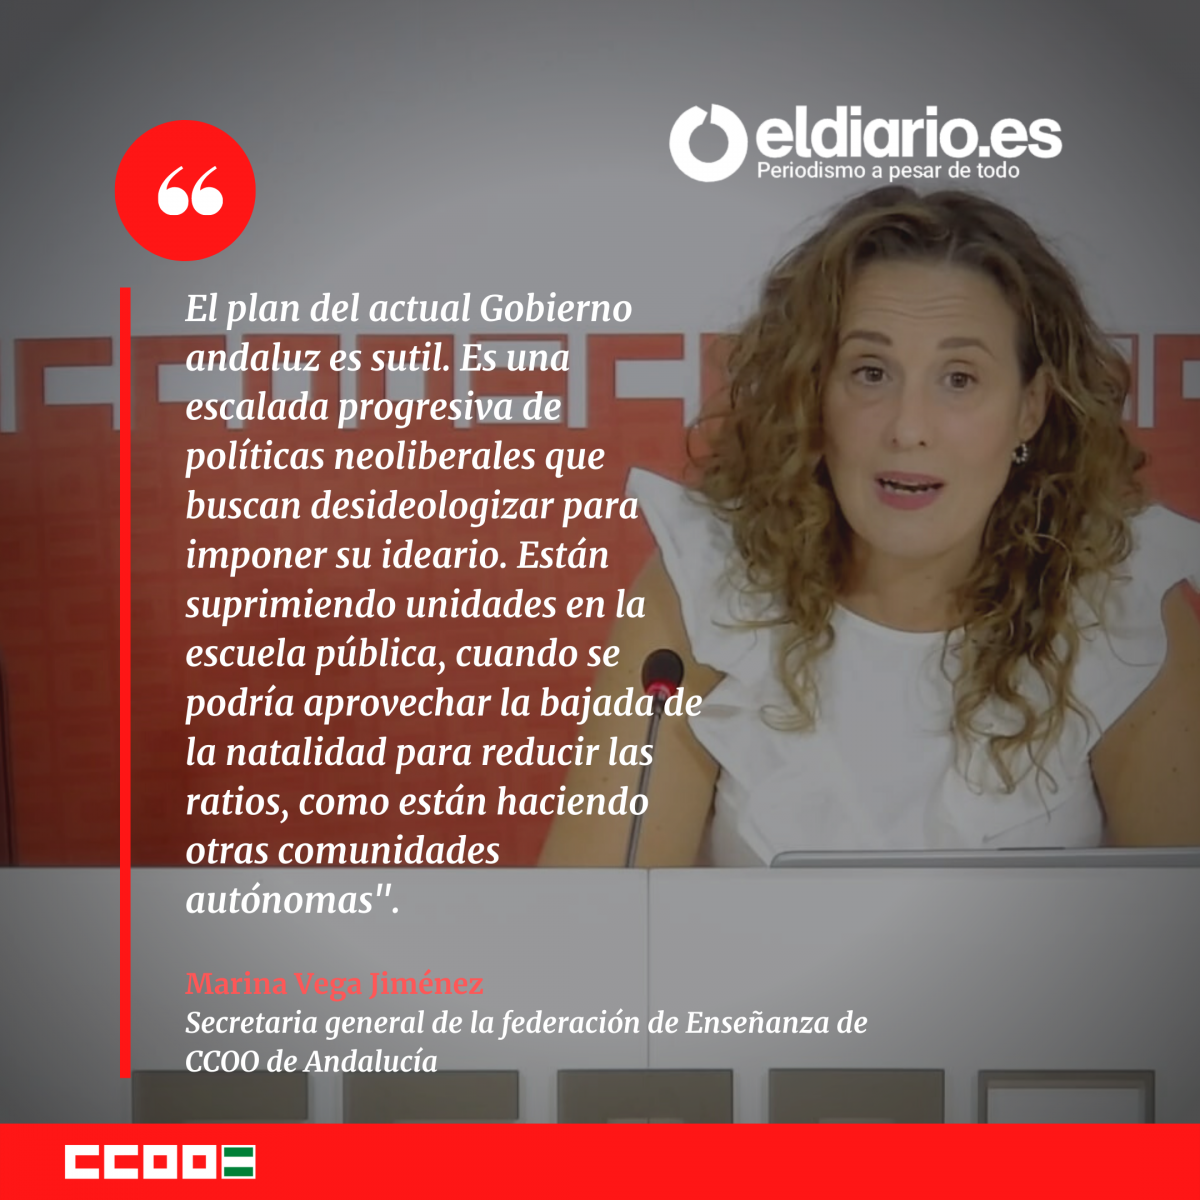 Marina Vega, secretaria general de la Federación de Enseñanza de CCOO de Andalucía